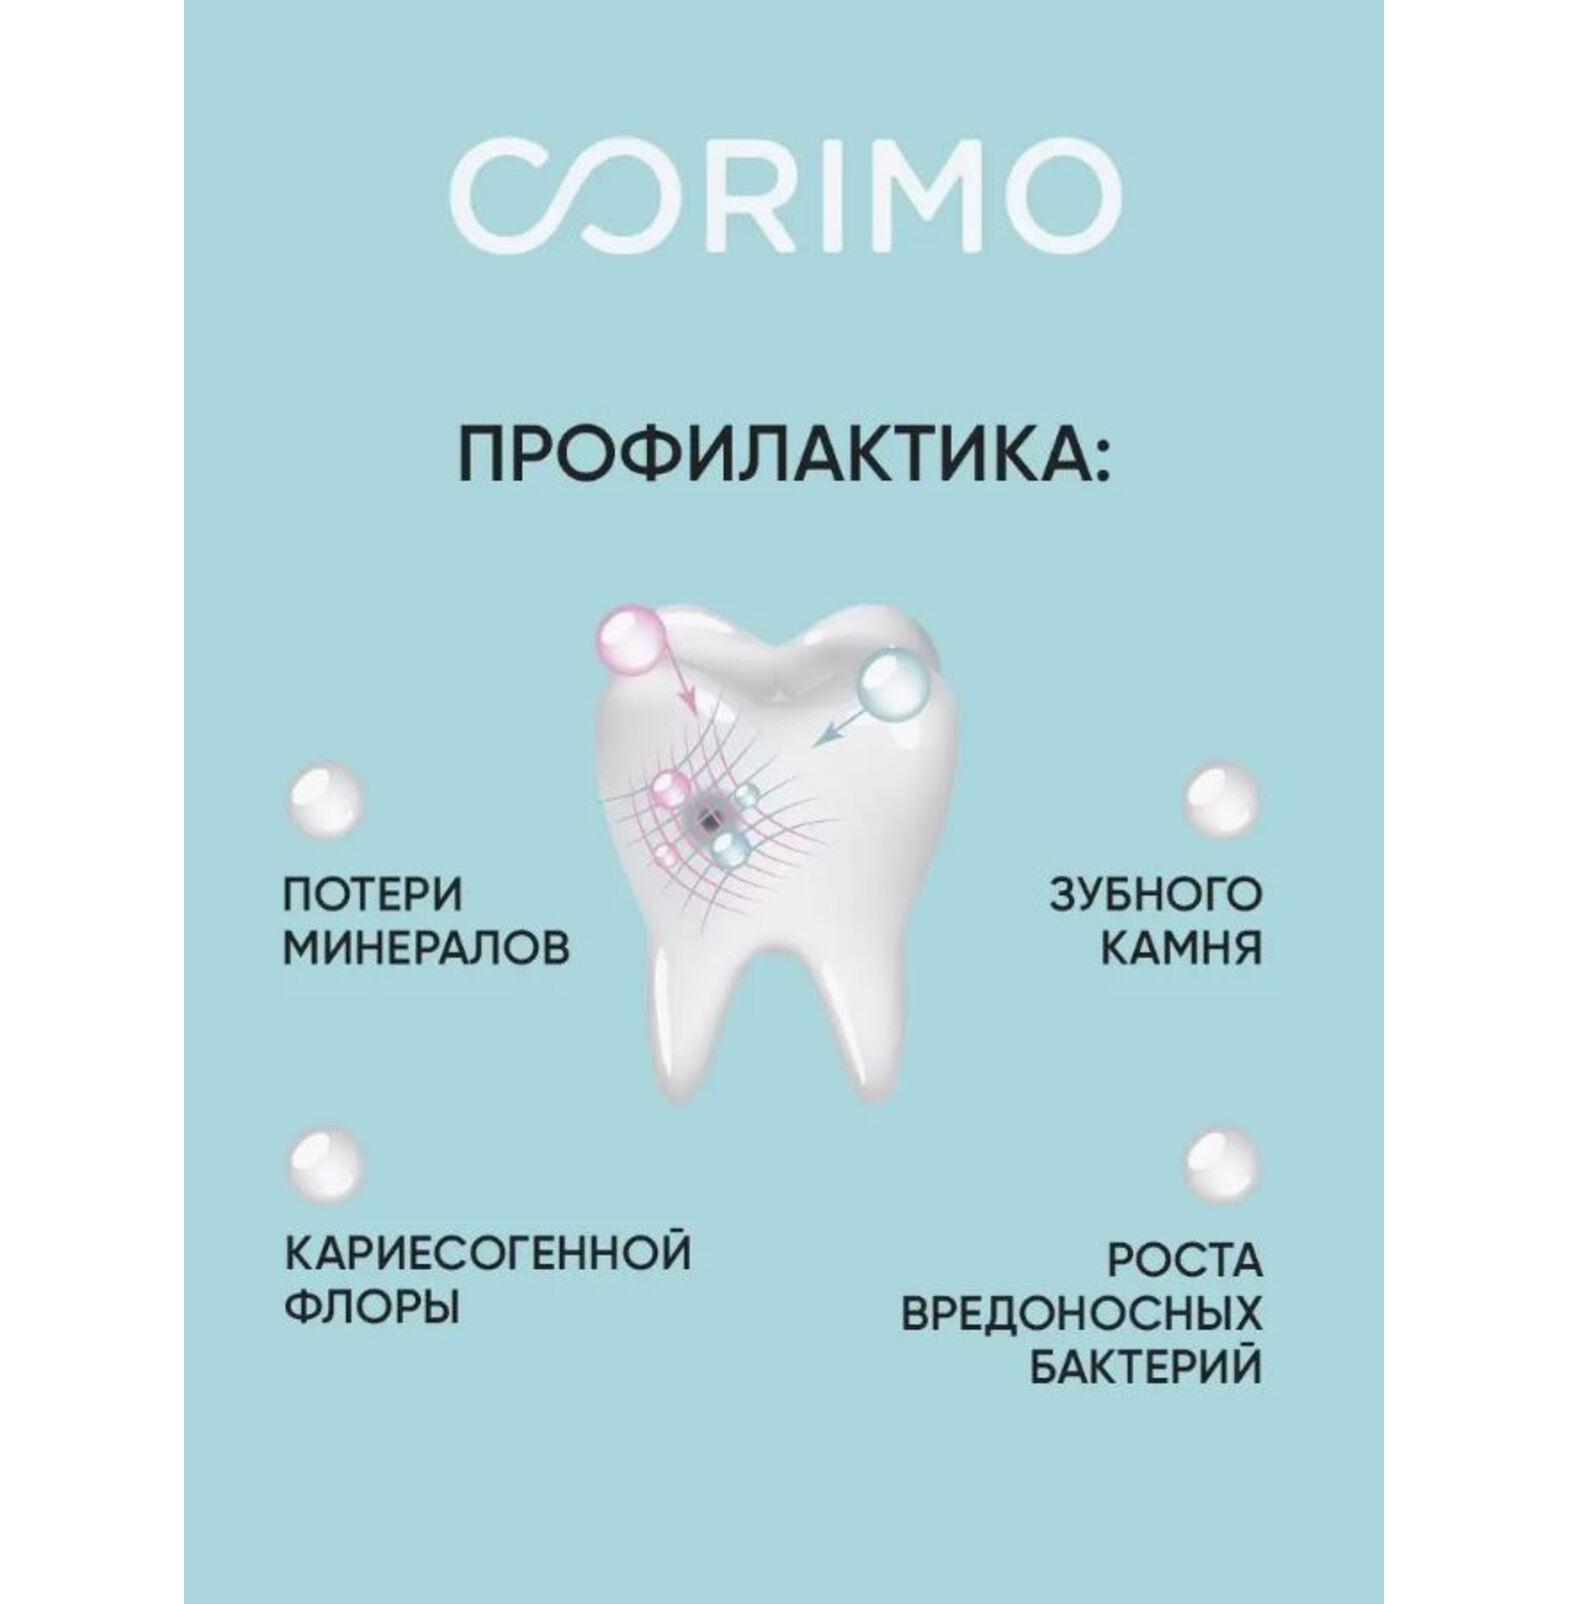 Зубная паста CORIMO профилактическая с пробиотиками для чувствительных зубов Мгновенное действие 75 г - фото 7